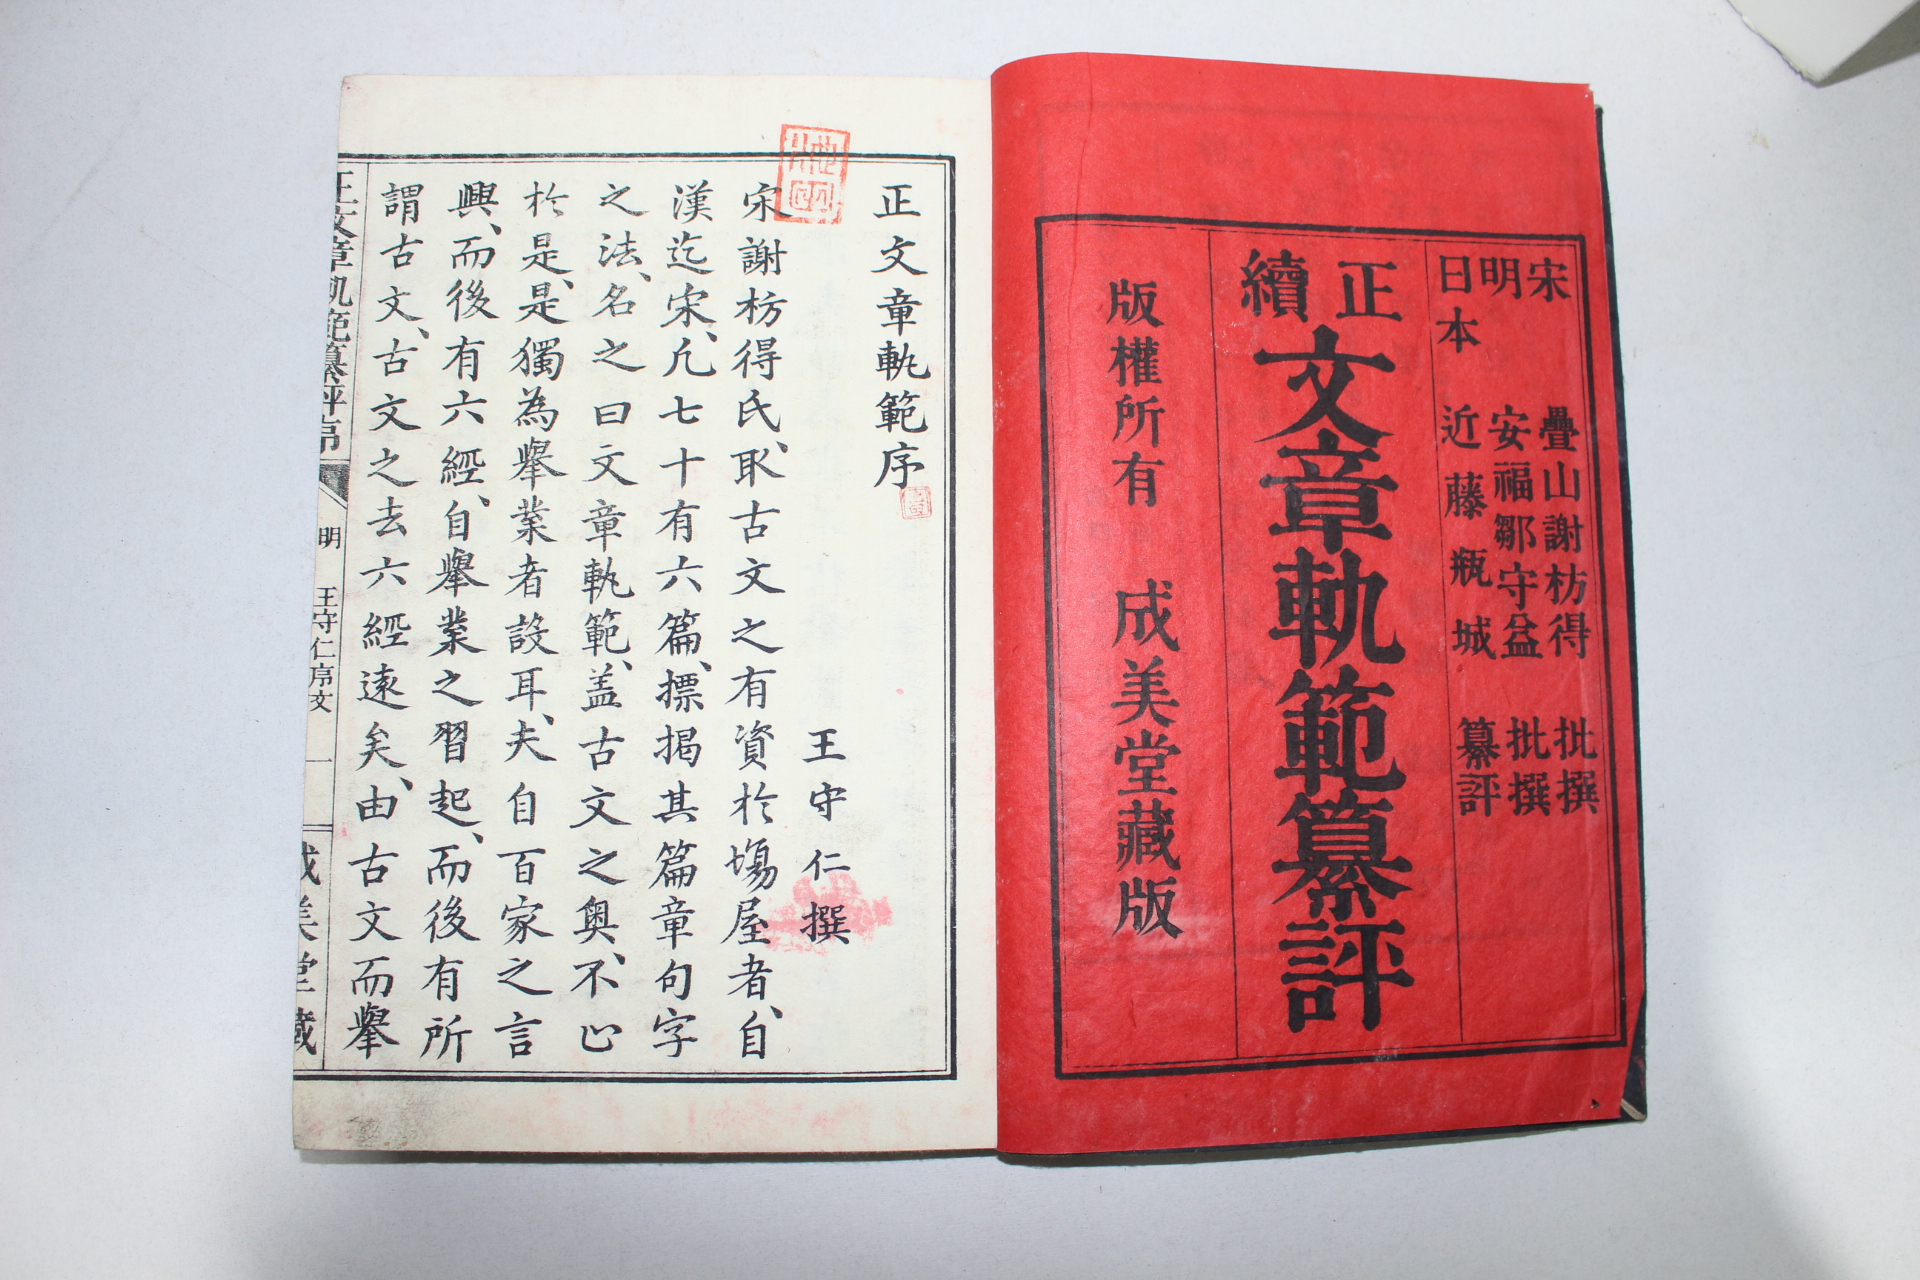 에도시기 일본목판본 정문장쾌범(正文章軌範) 2책